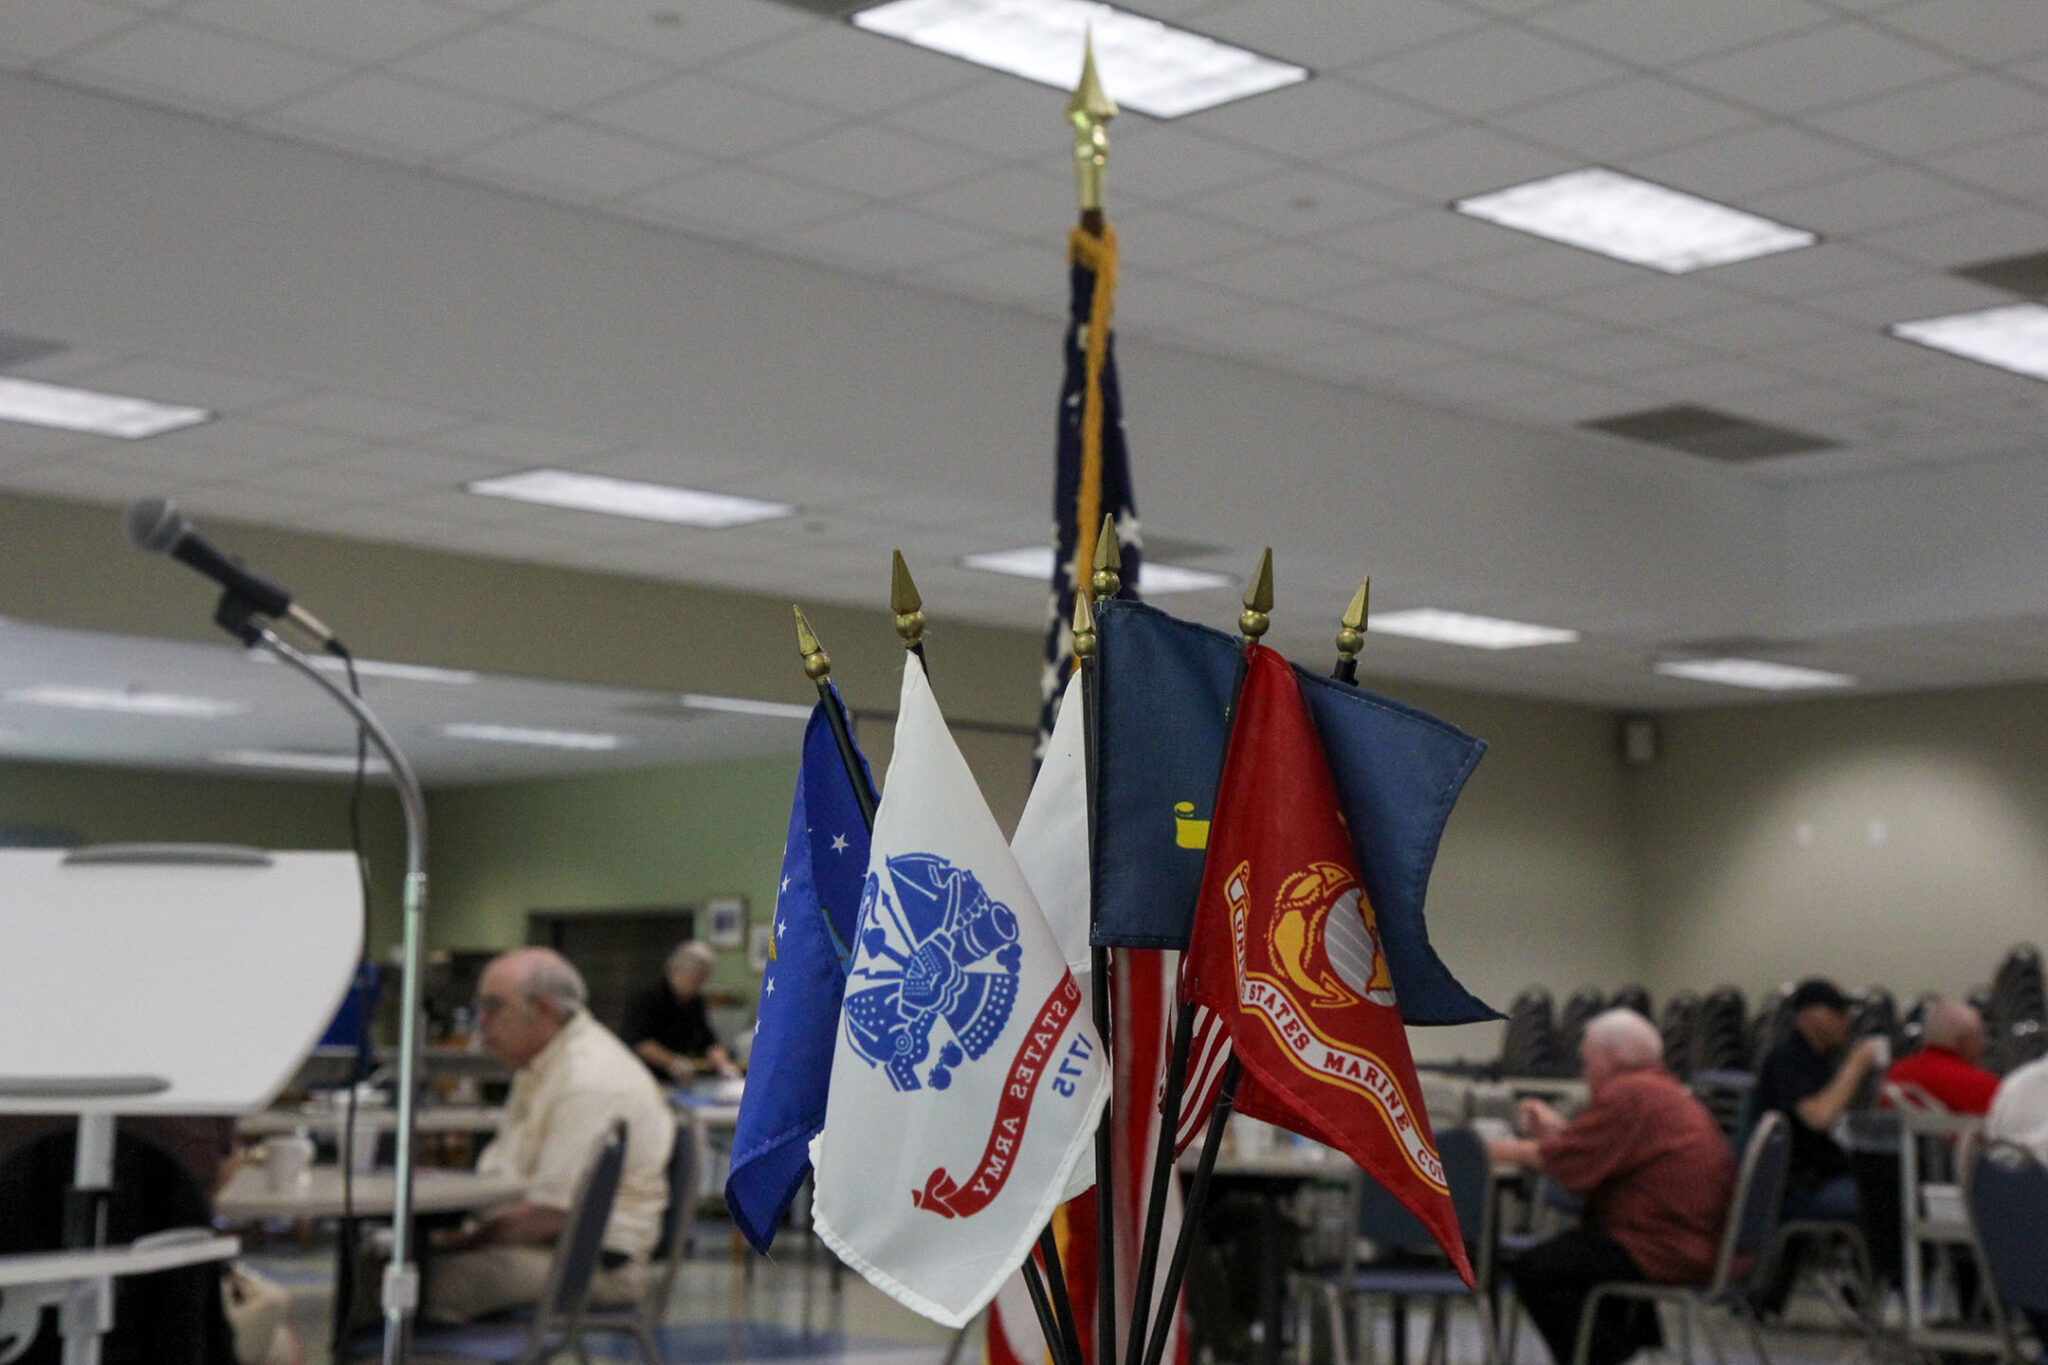 Veterans Breakfast at Senior Center Aug. 4